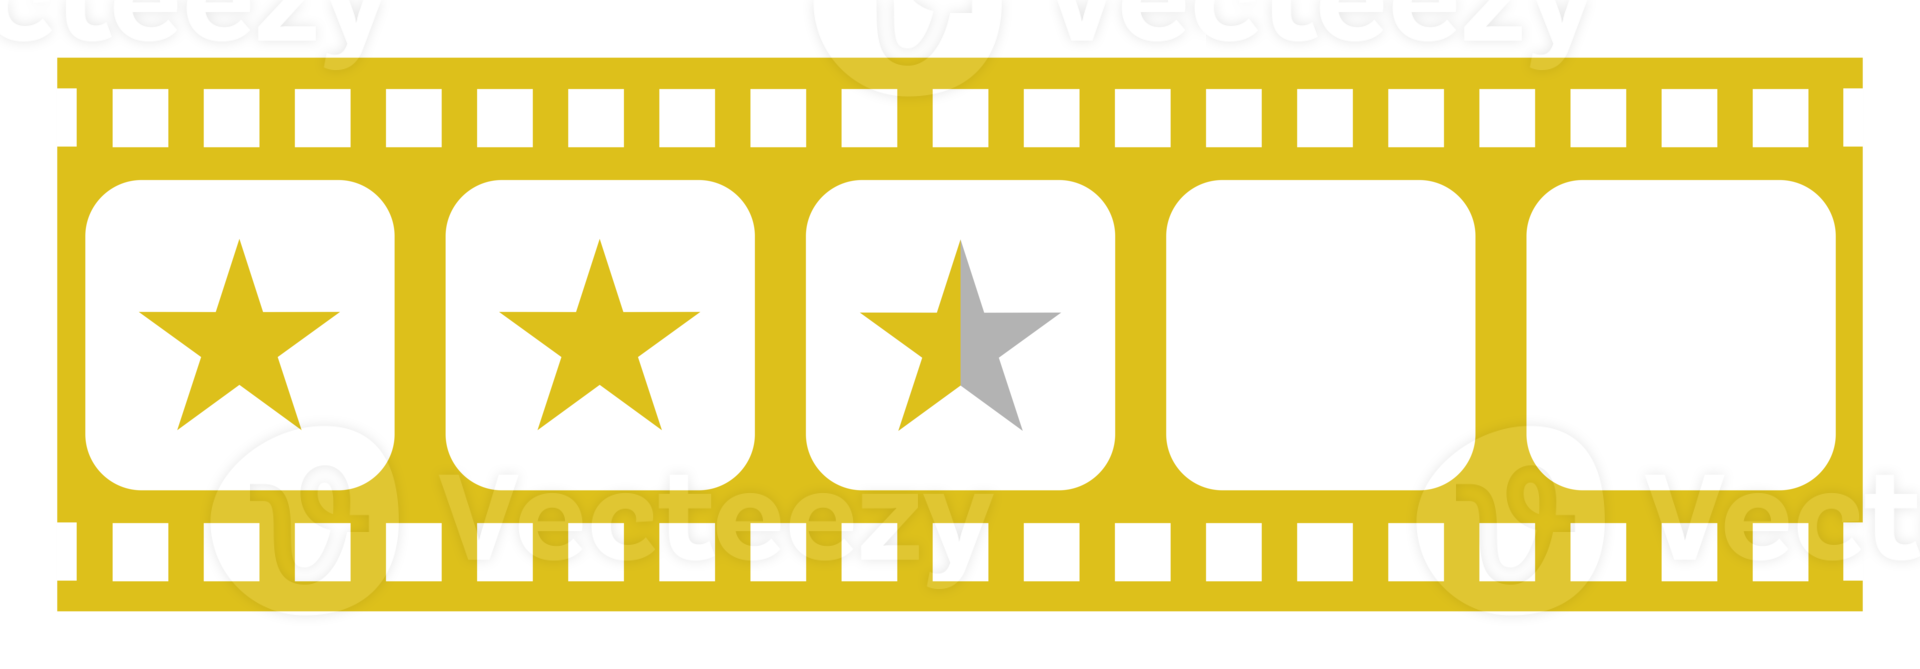 Bild der fünf 5-Sterne-Zeichen in der Filmstreifen-Silhouette. Sternbewertungssymbol für Film- oder Filmkritik, Piktogramm, Apps, Website oder Grafikdesignelement. Bewertung 2,5 Sterne. PNG-Format png